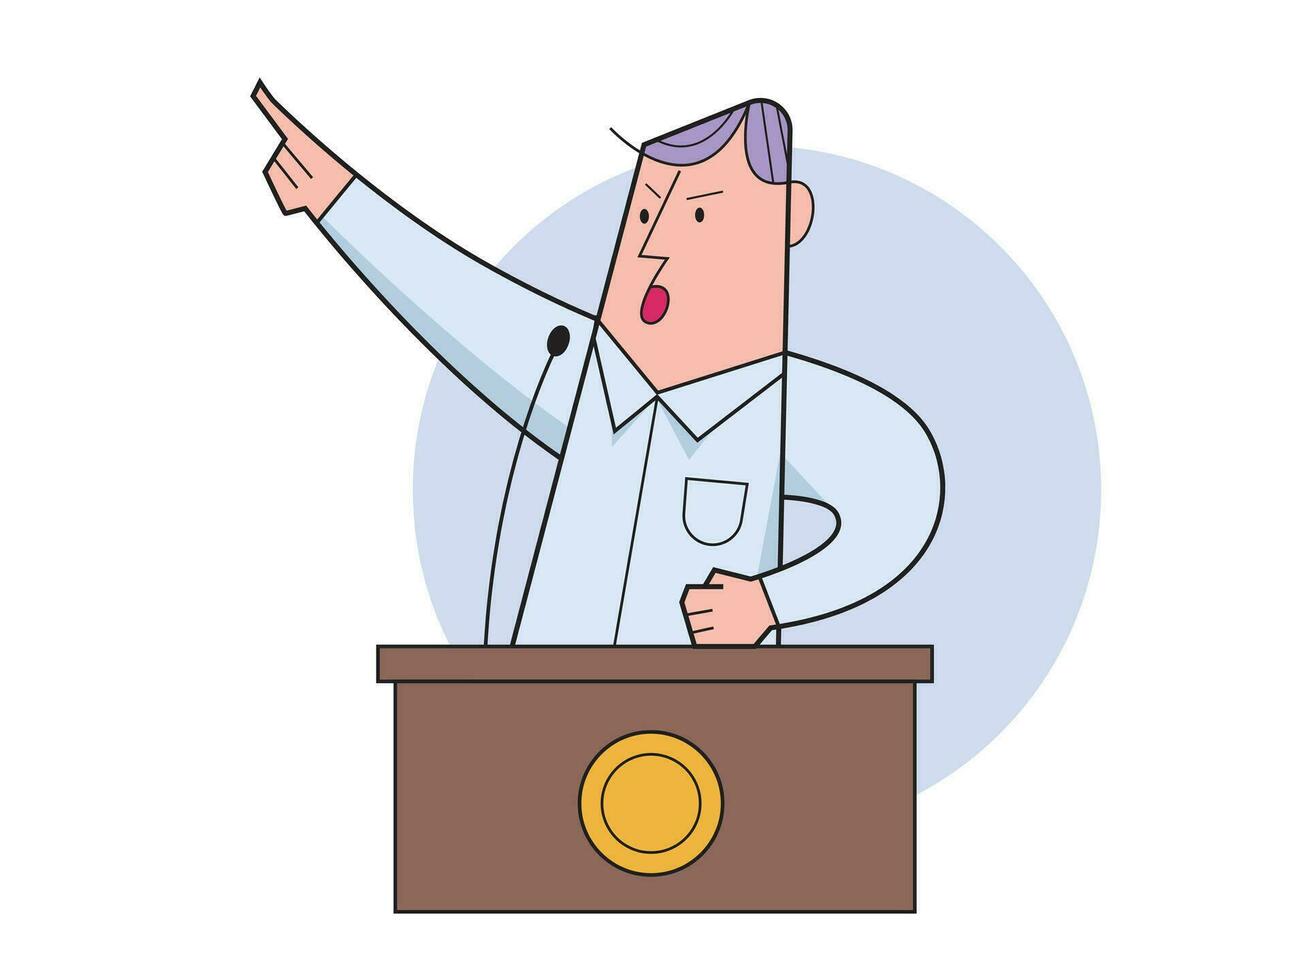 politicus sprekend achter de podium, openbaar spreker karakter vector illustratie